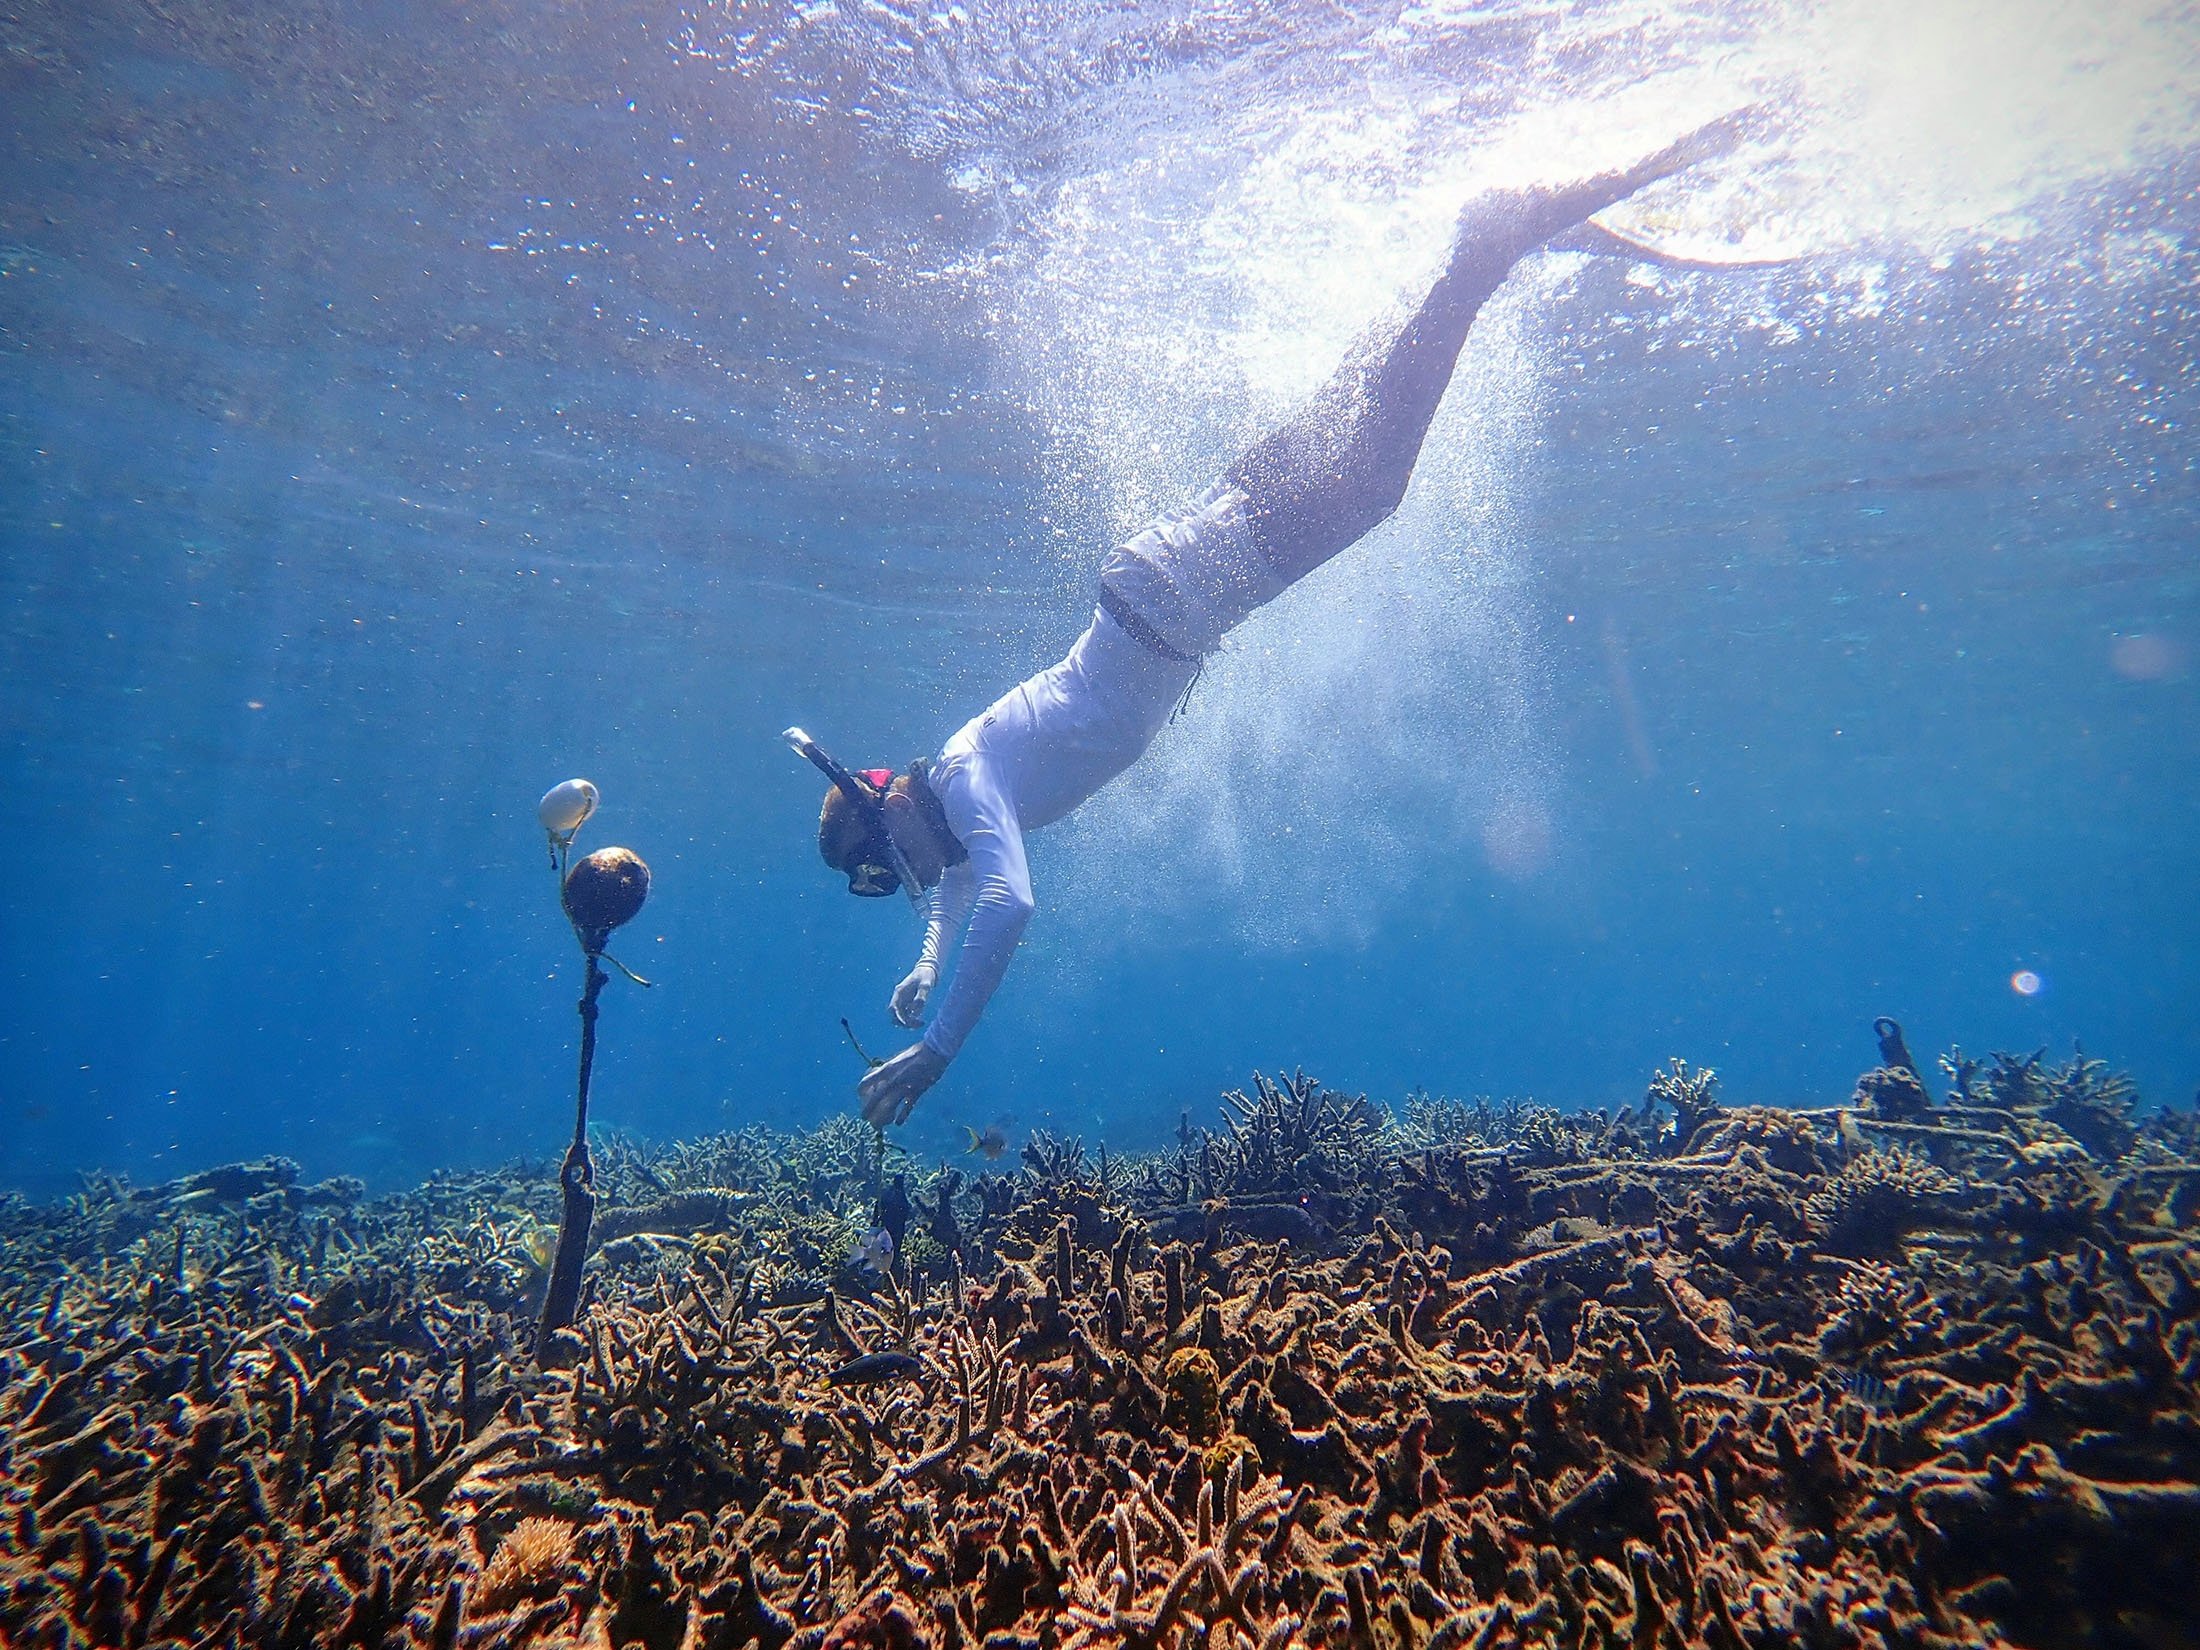 Seorang peneliti menyebarkan hidrofon, yang membantu merekam soundscape bawah air untuk proyek percontohan menggunakan sistem kecerdasan buatan untuk mengidentifikasi kesehatan terumbu karang, di laut kepulauan Spermonde, provinsi Sulawesi Selatan, Indonesia, 24 Juni 2019. (Foto Reuters)